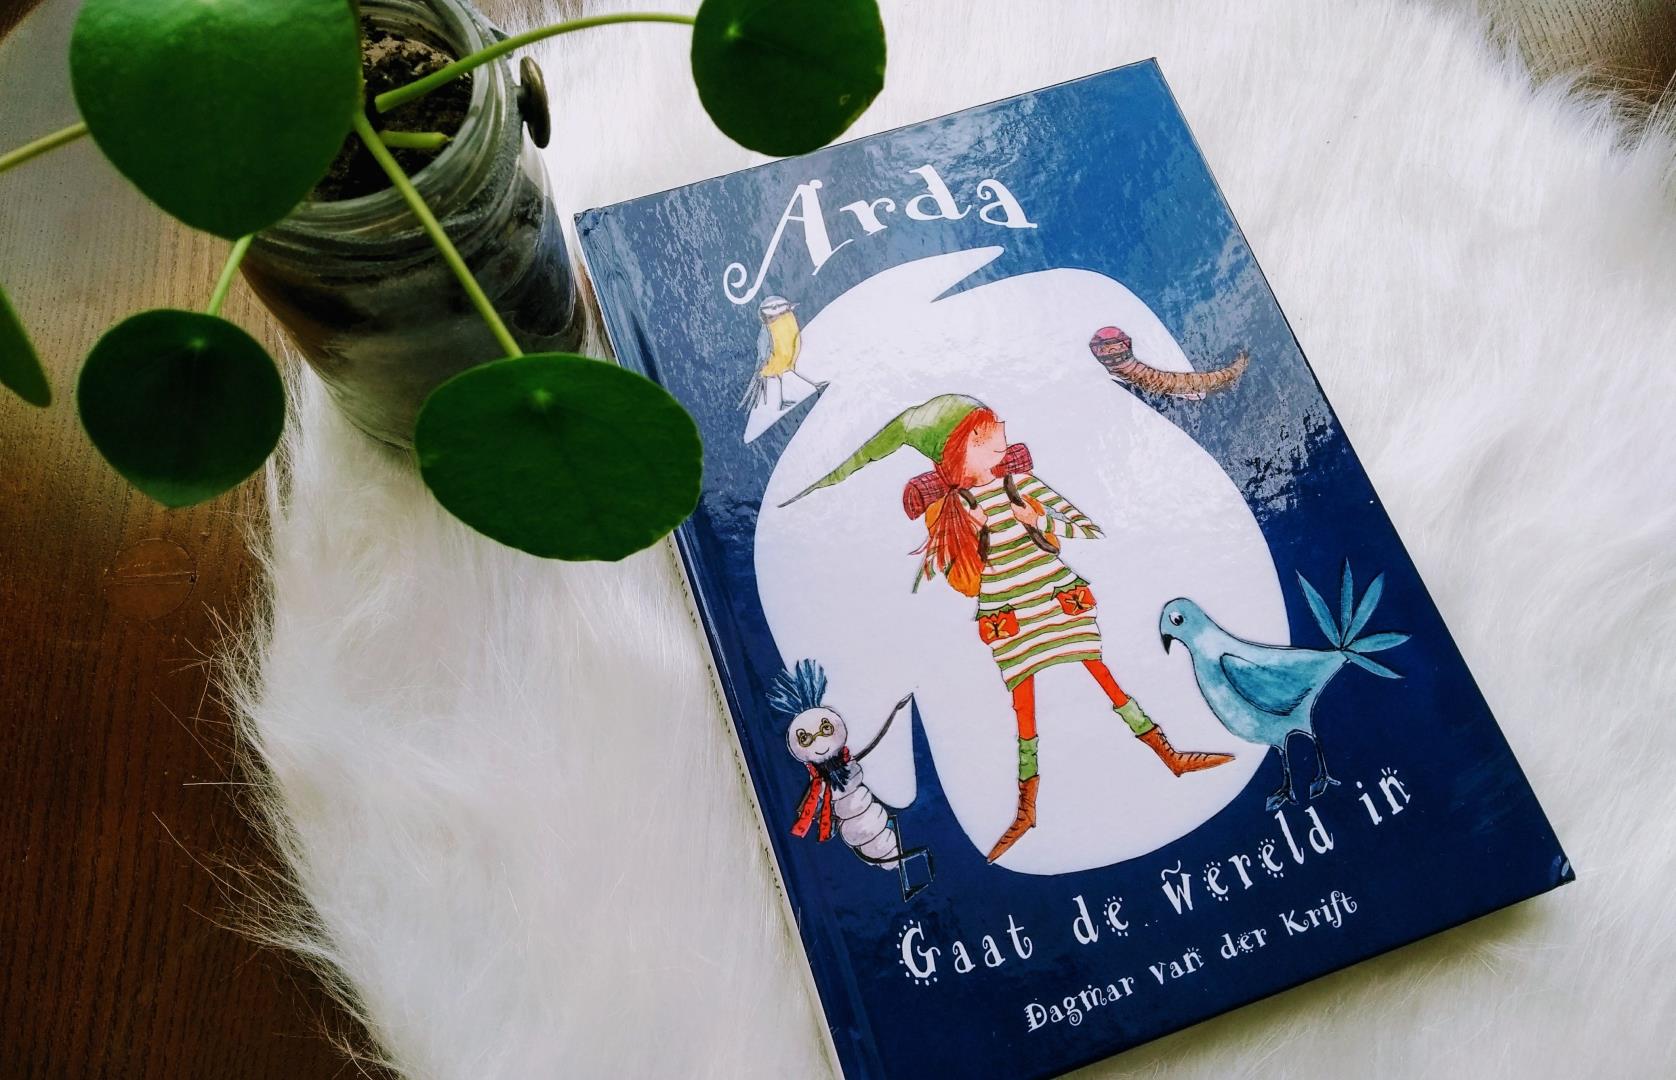 Review kinderboek: Arda gaat de wereld in